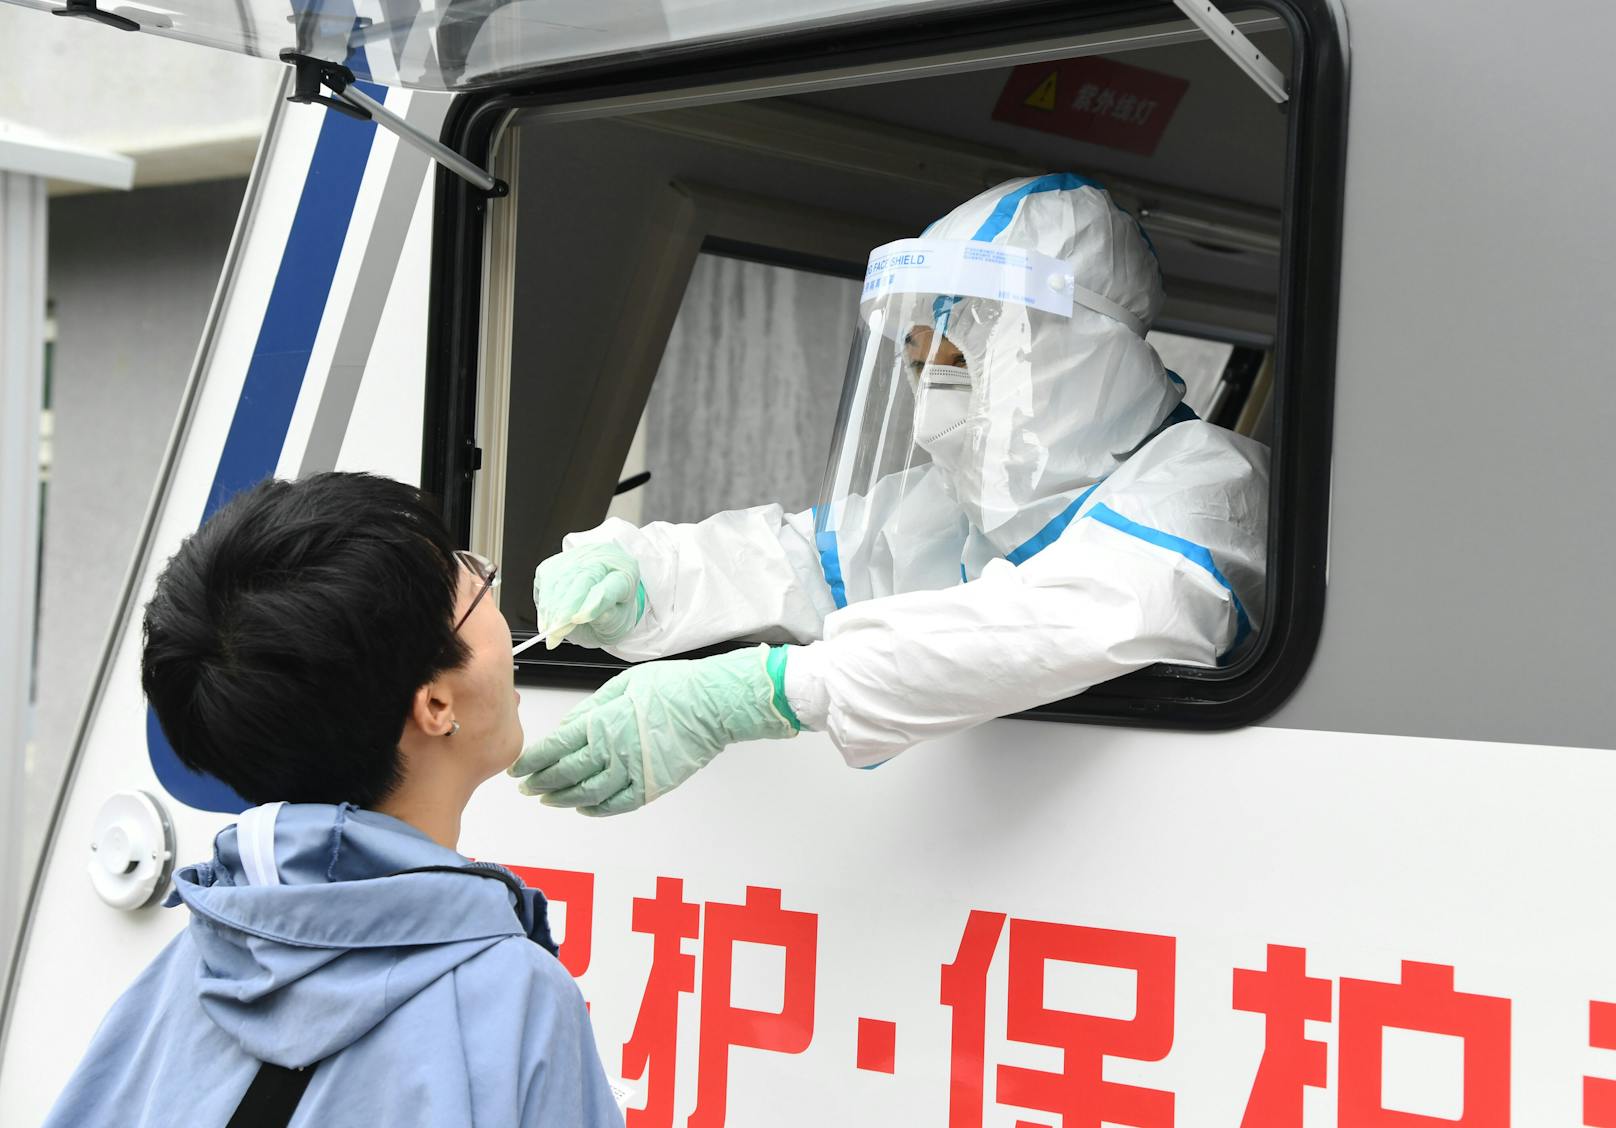 "Fataler als Corona": China warnt vor neuem Lungenvirus